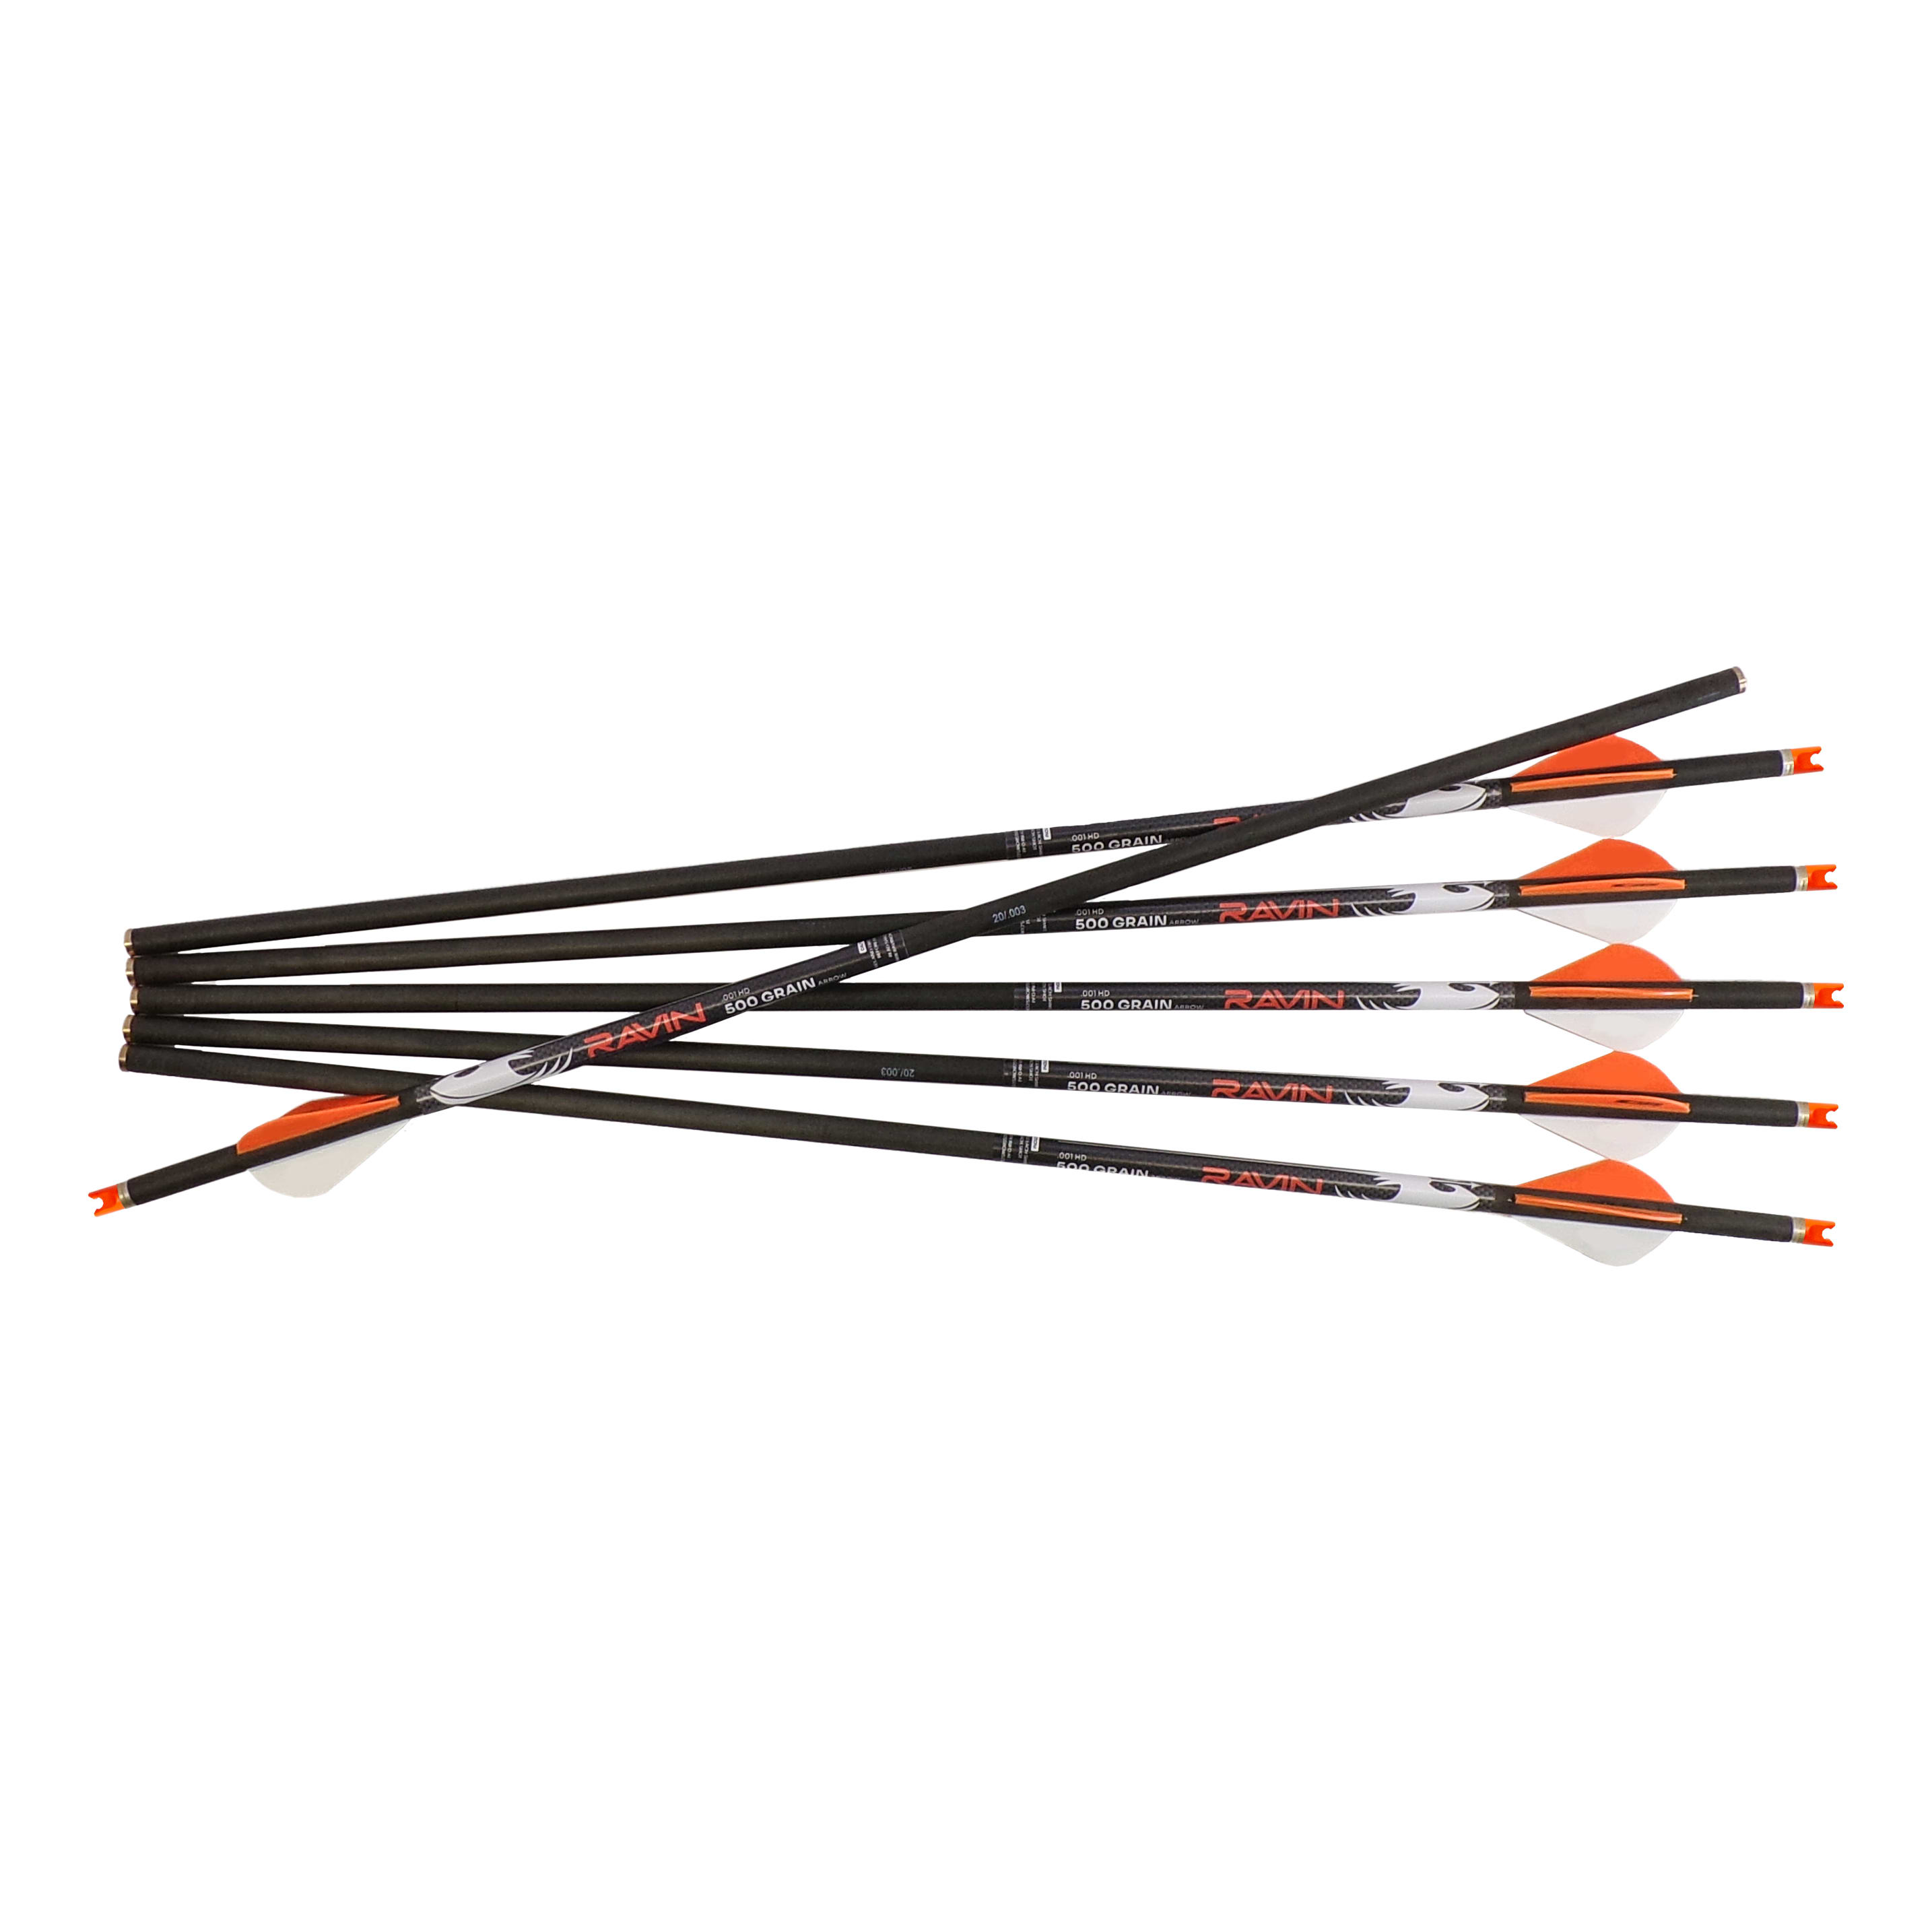 Ravin .001 HD 500 Grain Crossbow Arrows